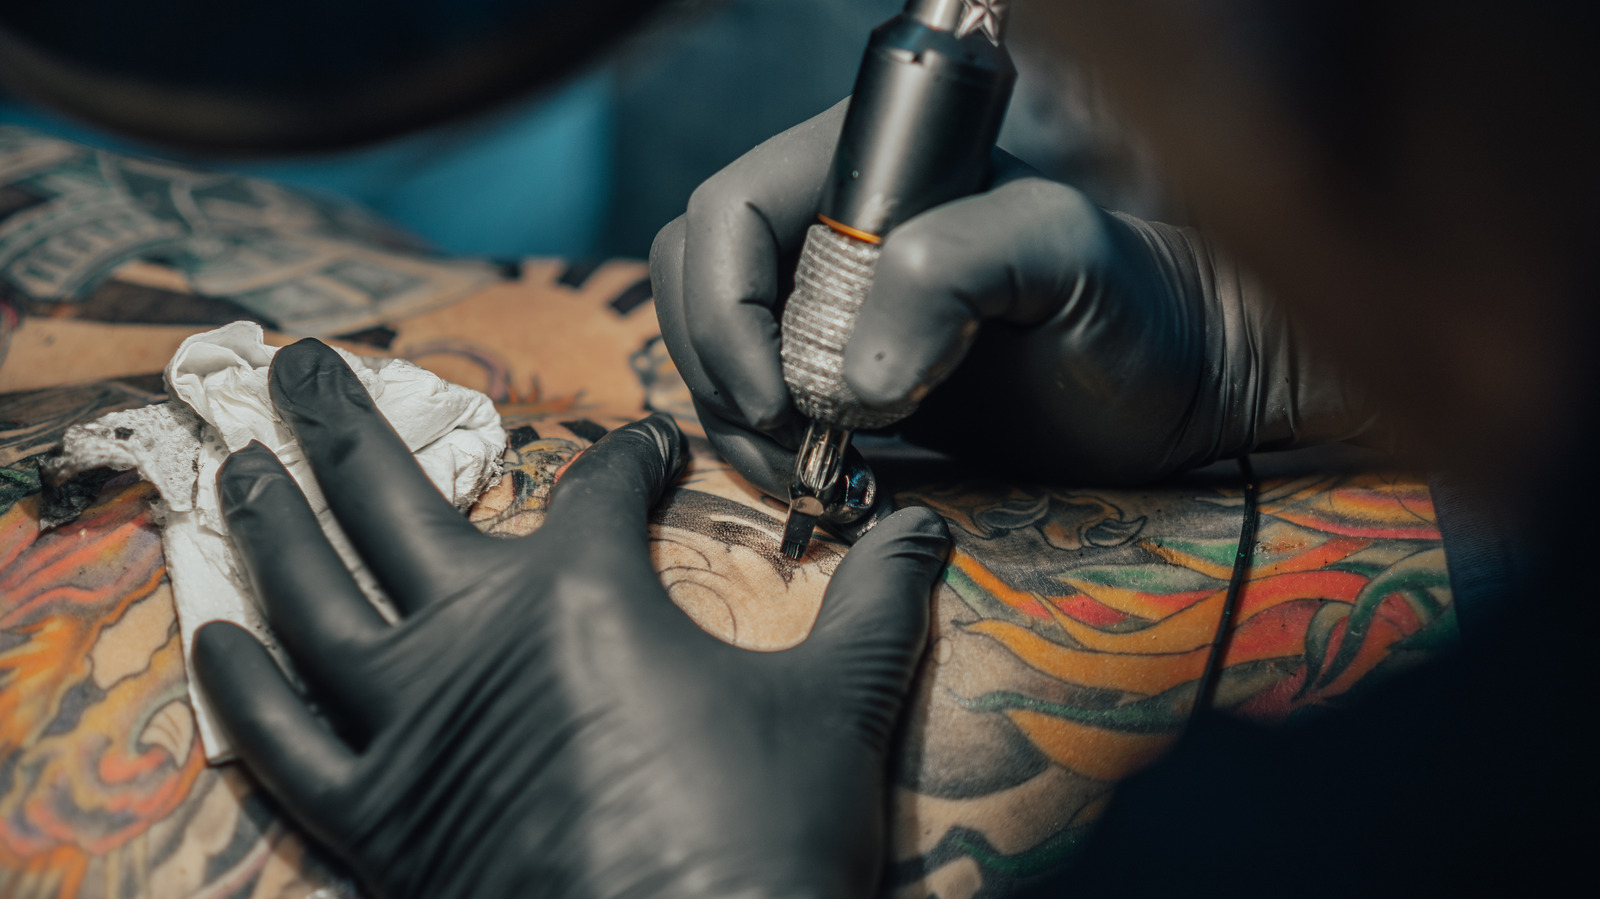 Eminem song full sleeve tattoo | Chavdar Dobrev | Flickr